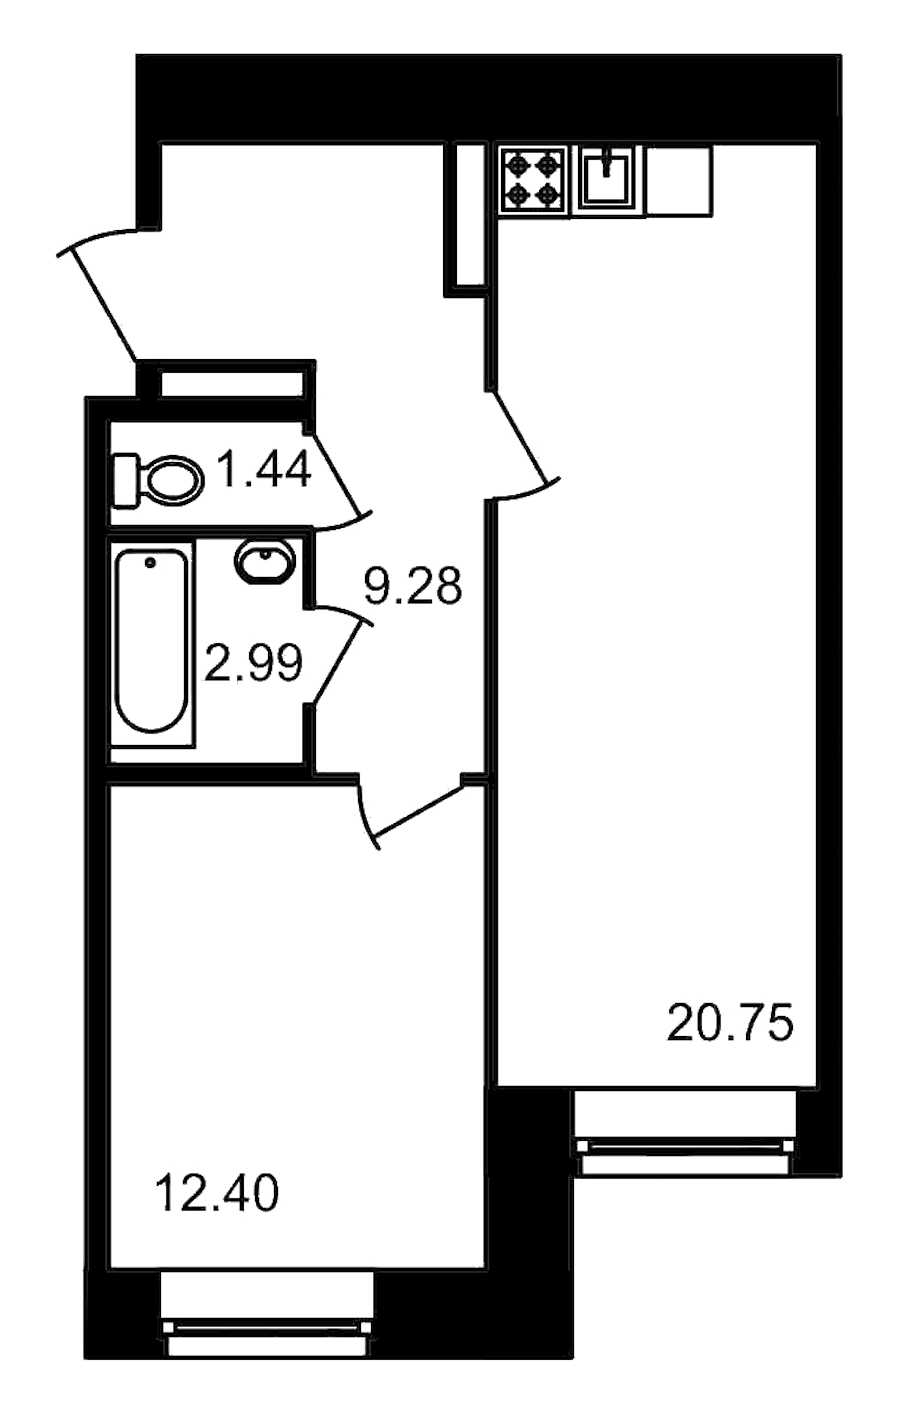 Однокомнатная квартира в ЦДС: площадь 46.86 м2 , этаж: 2 – купить в Санкт-Петербурге